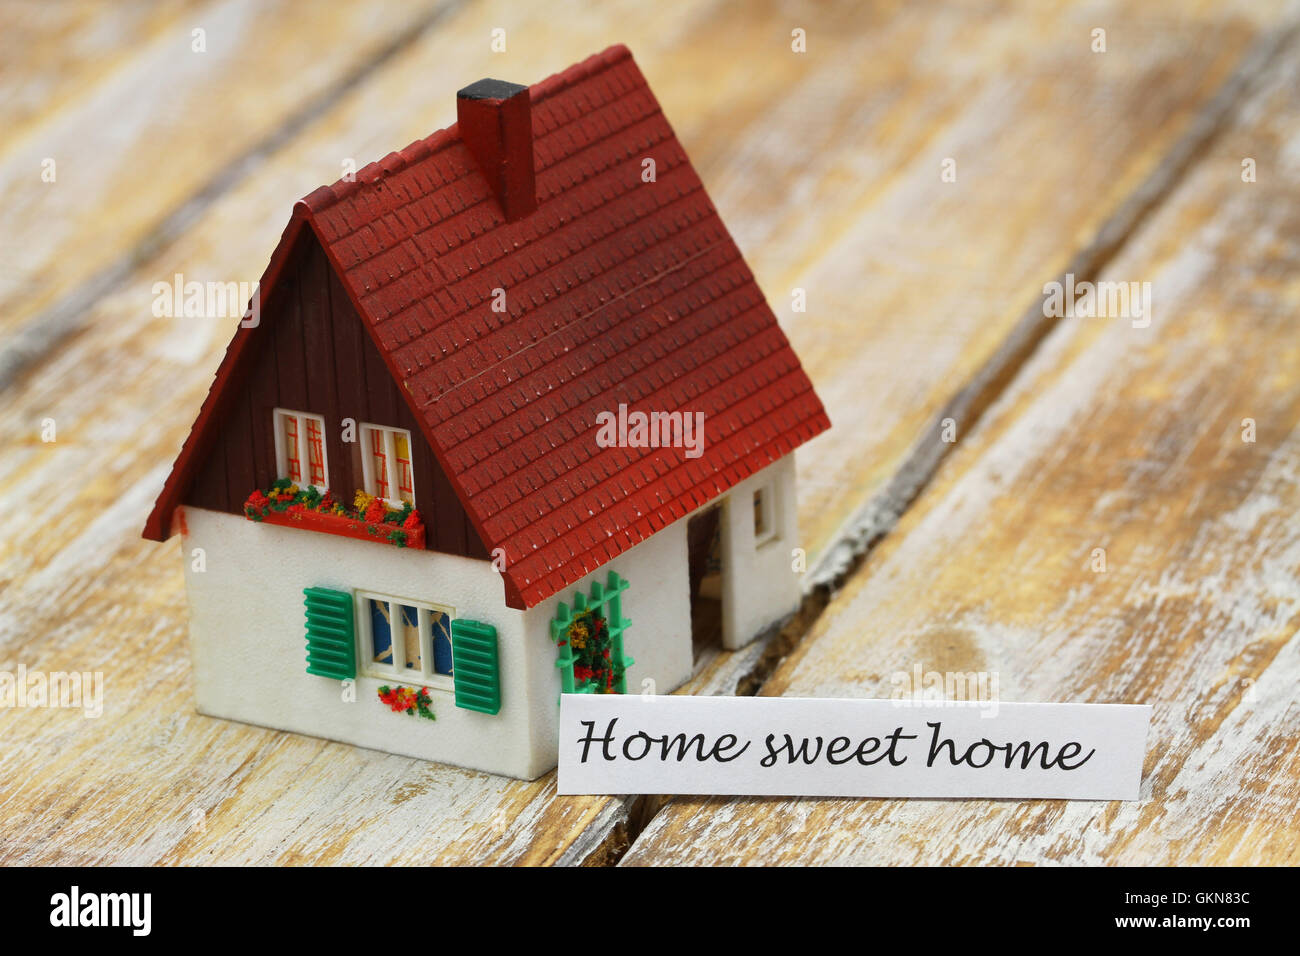 Home sweet home card con il modello in miniatura di una casa Foto Stock